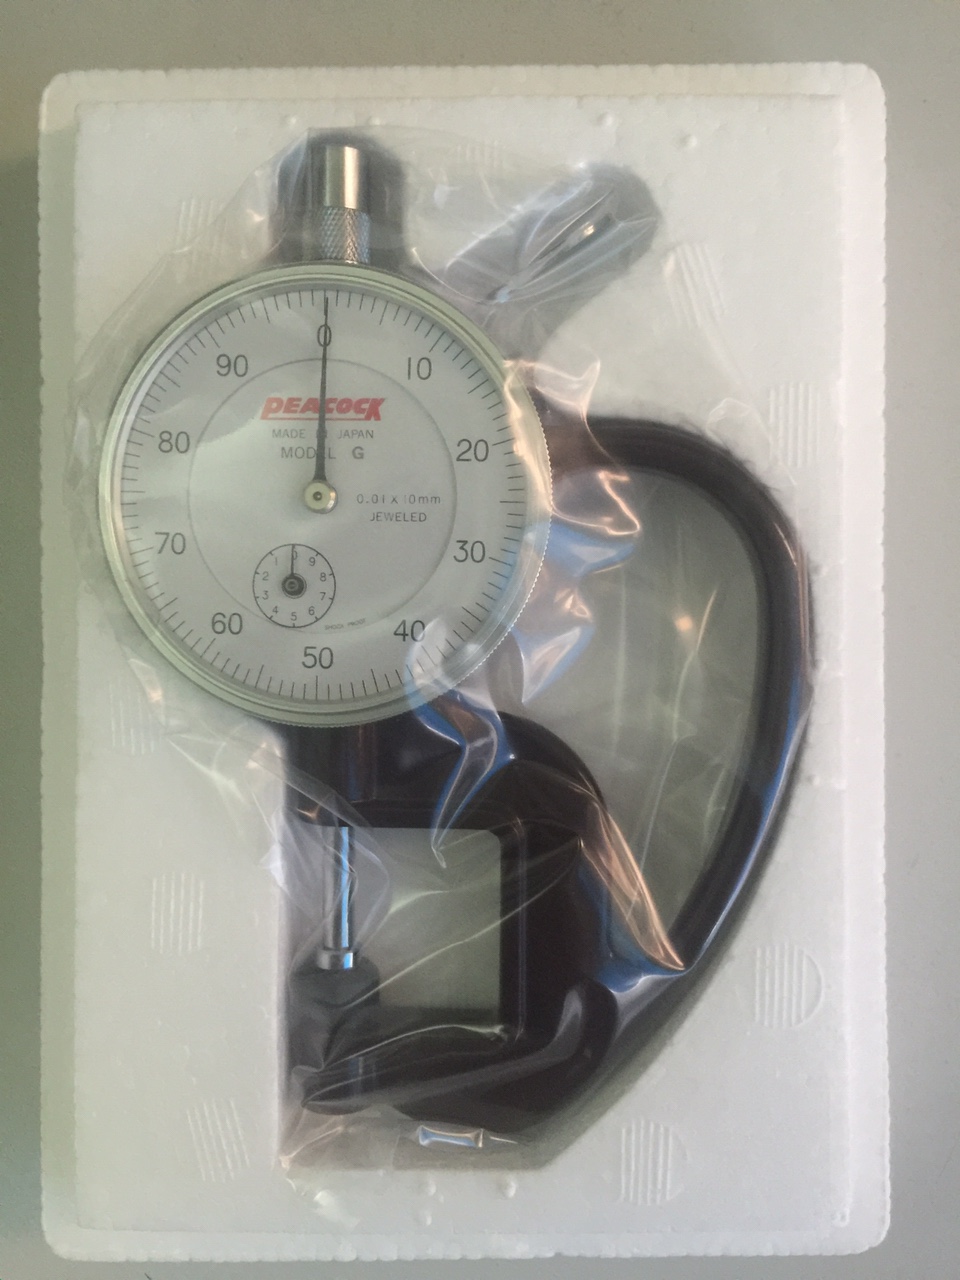 Đồng hồ đo độ dày Peacock model G, thickness gauge